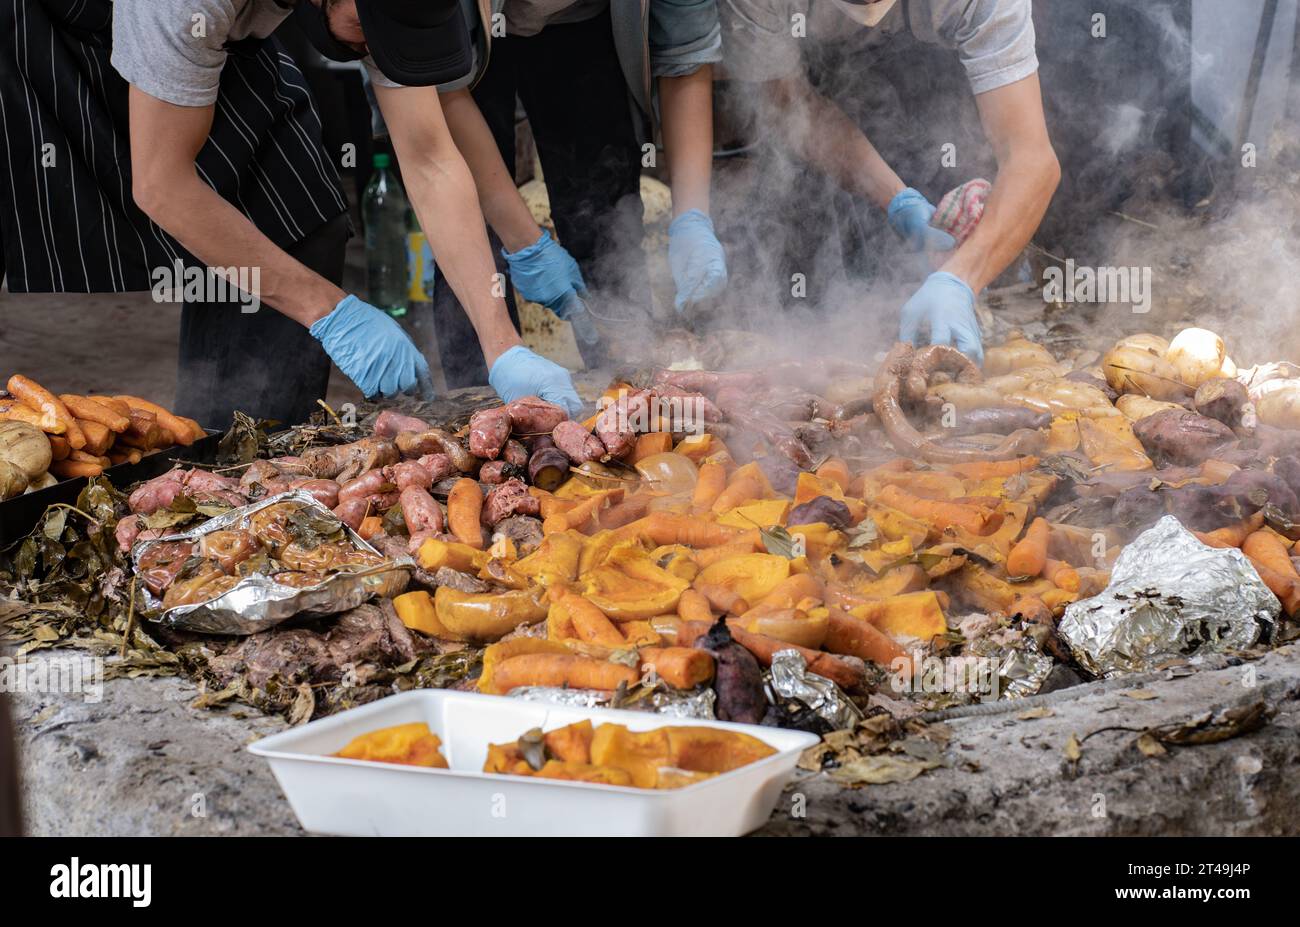 Eine Gruppe von Köchen legte das Fleisch und Gemüse, das im Rahmen der Curanto-Zeremonie unter Tage zubereitet wurde, zur Seite. Colonia Suiza, Bariloche, Argentinien. Stockfoto